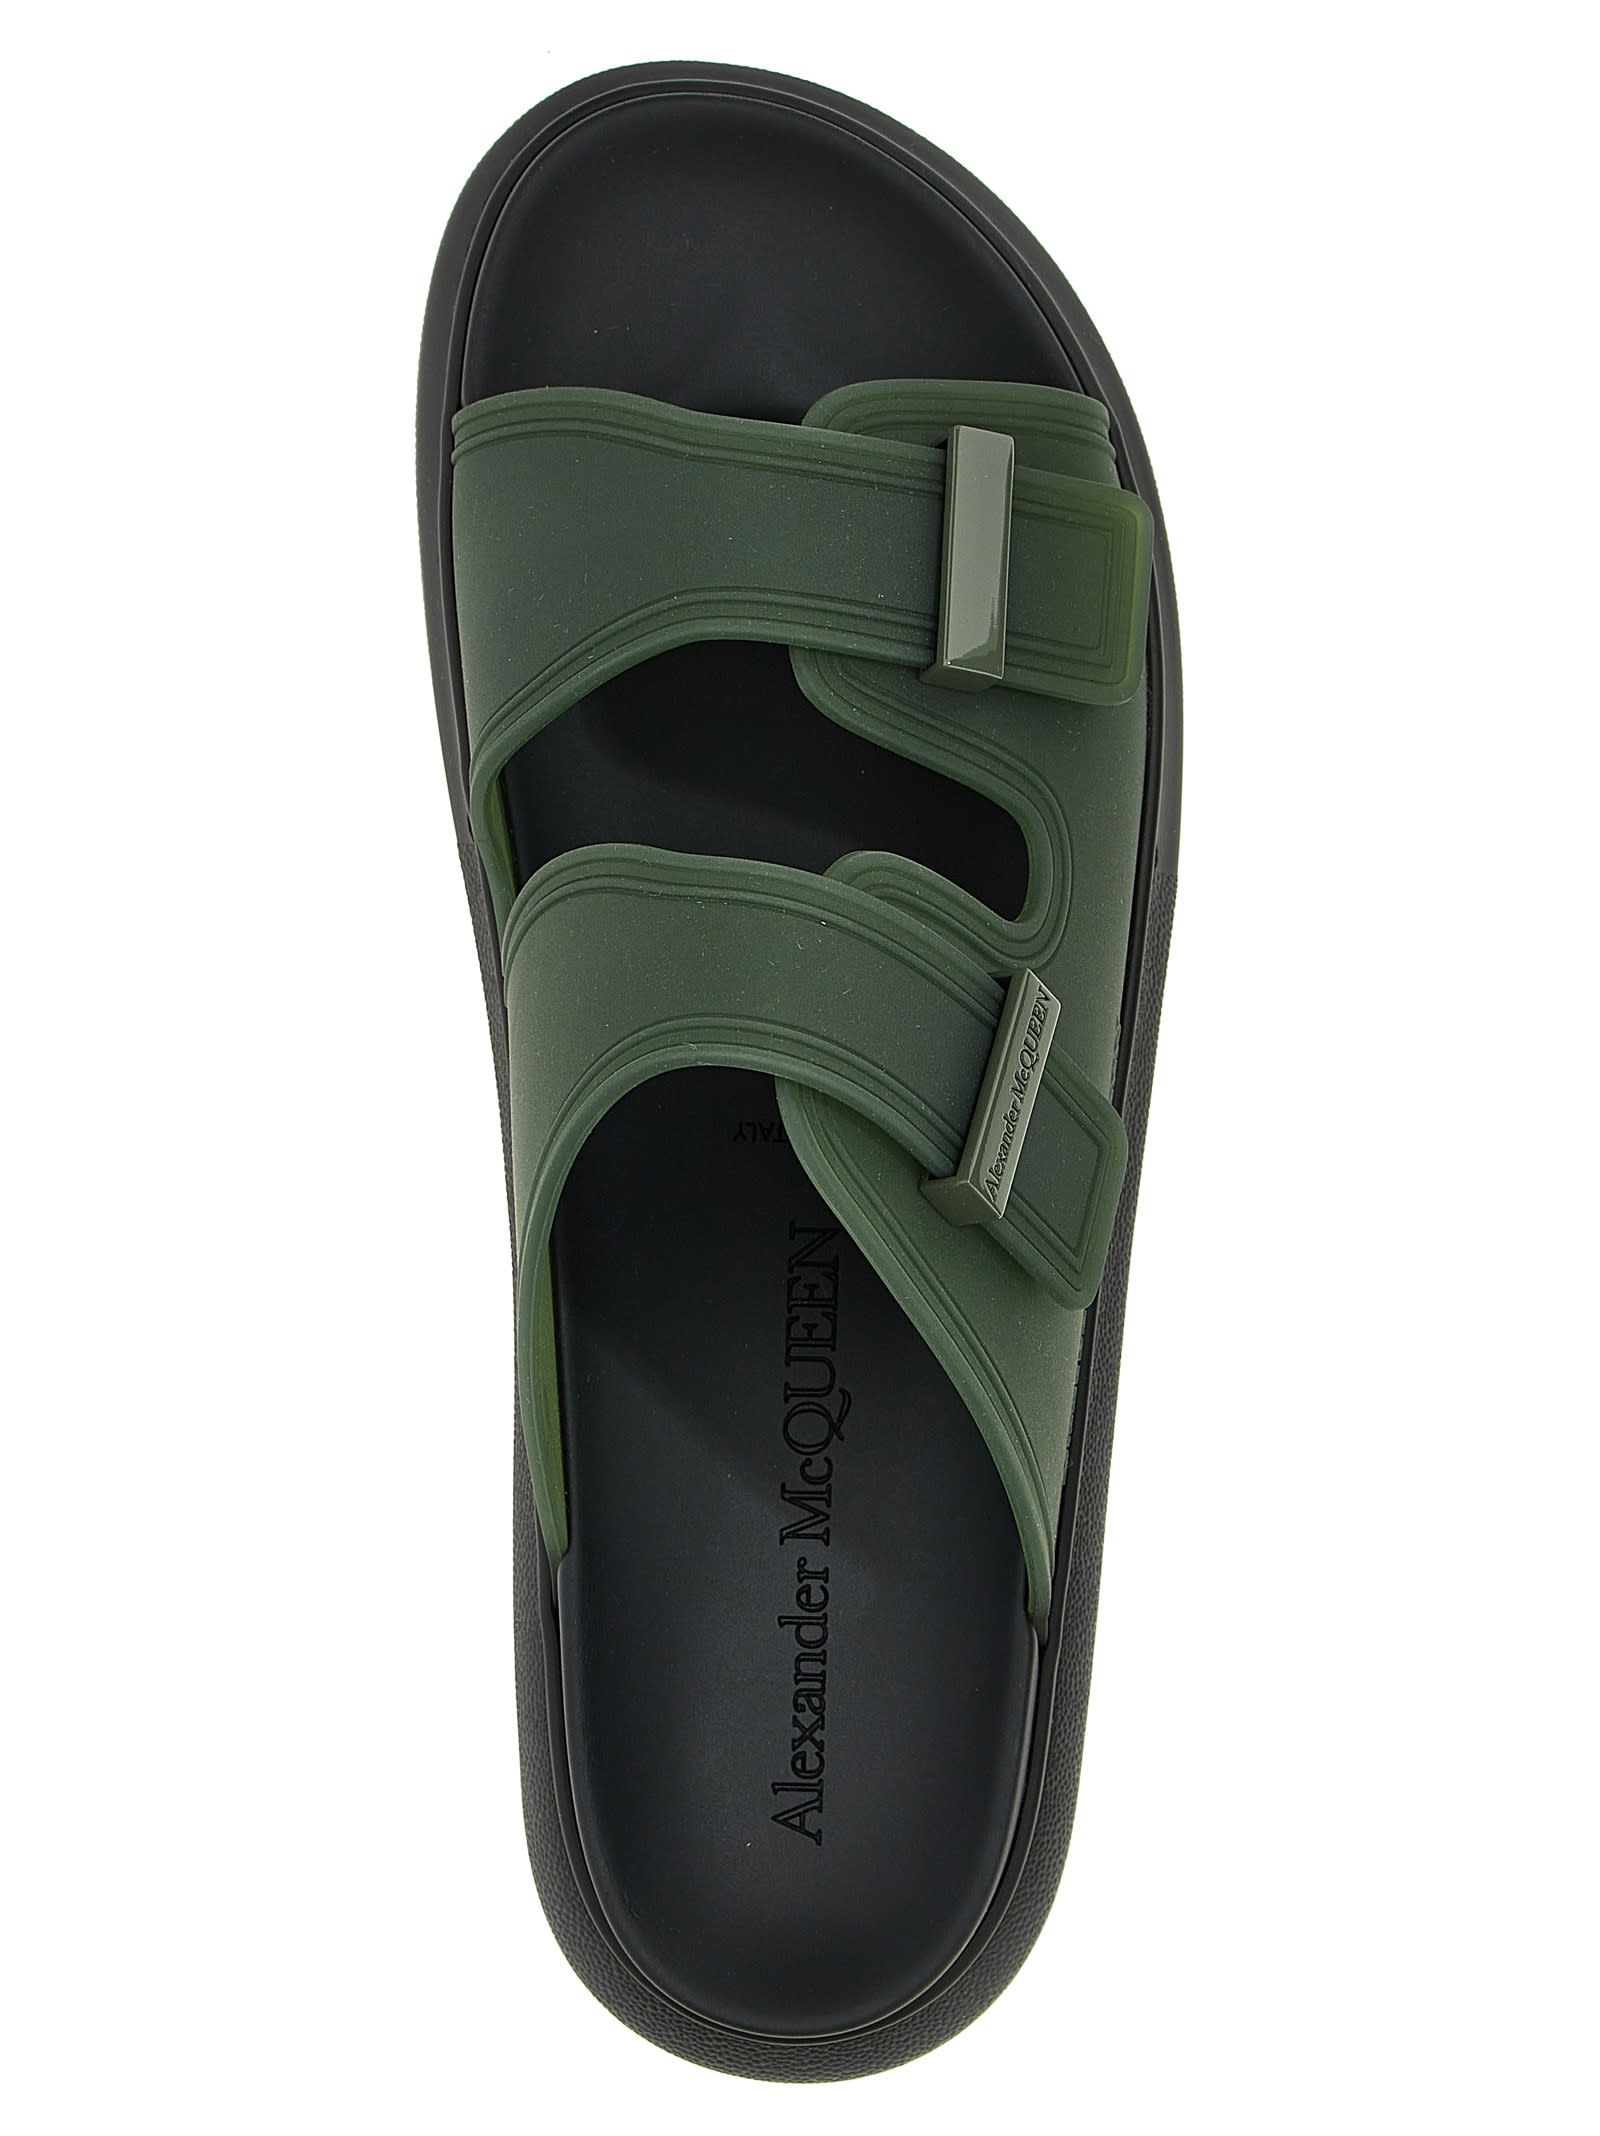 Shop Alexander Mcqueen Birke Sandals In Green